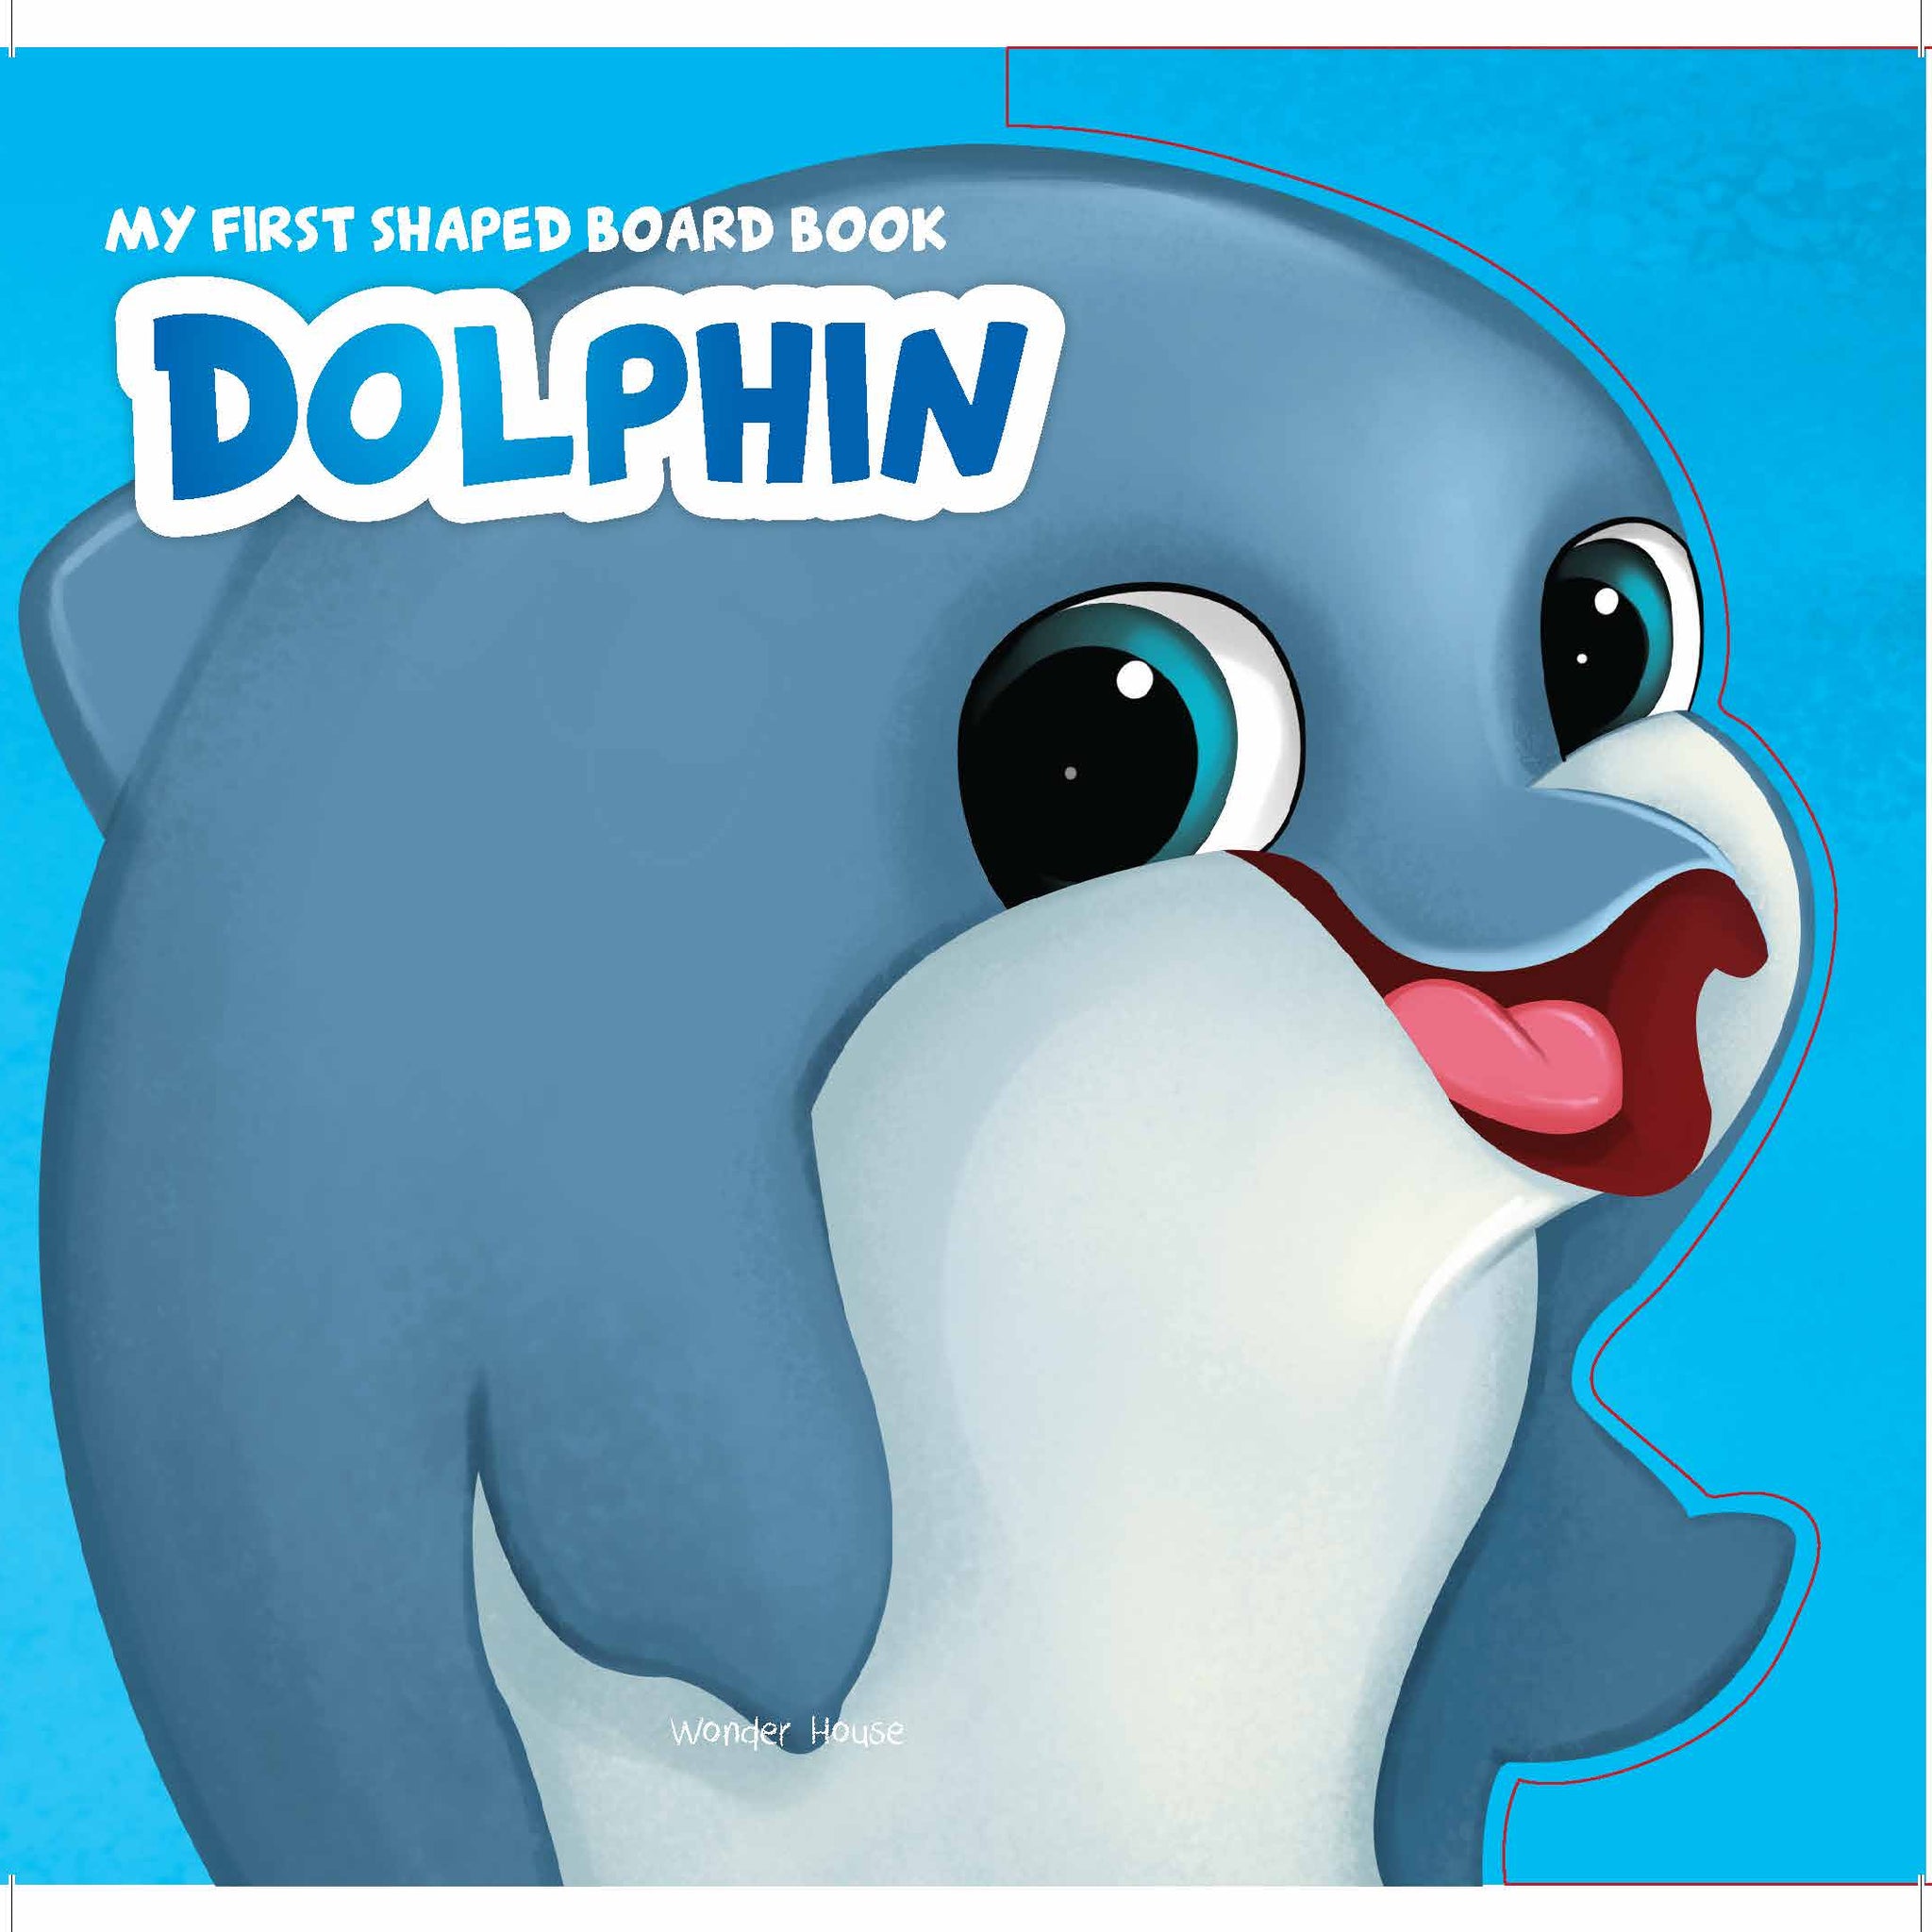 MyFirstShapedBoardbook- Dolphin, Die-Cut Animals, Picture Book for Children